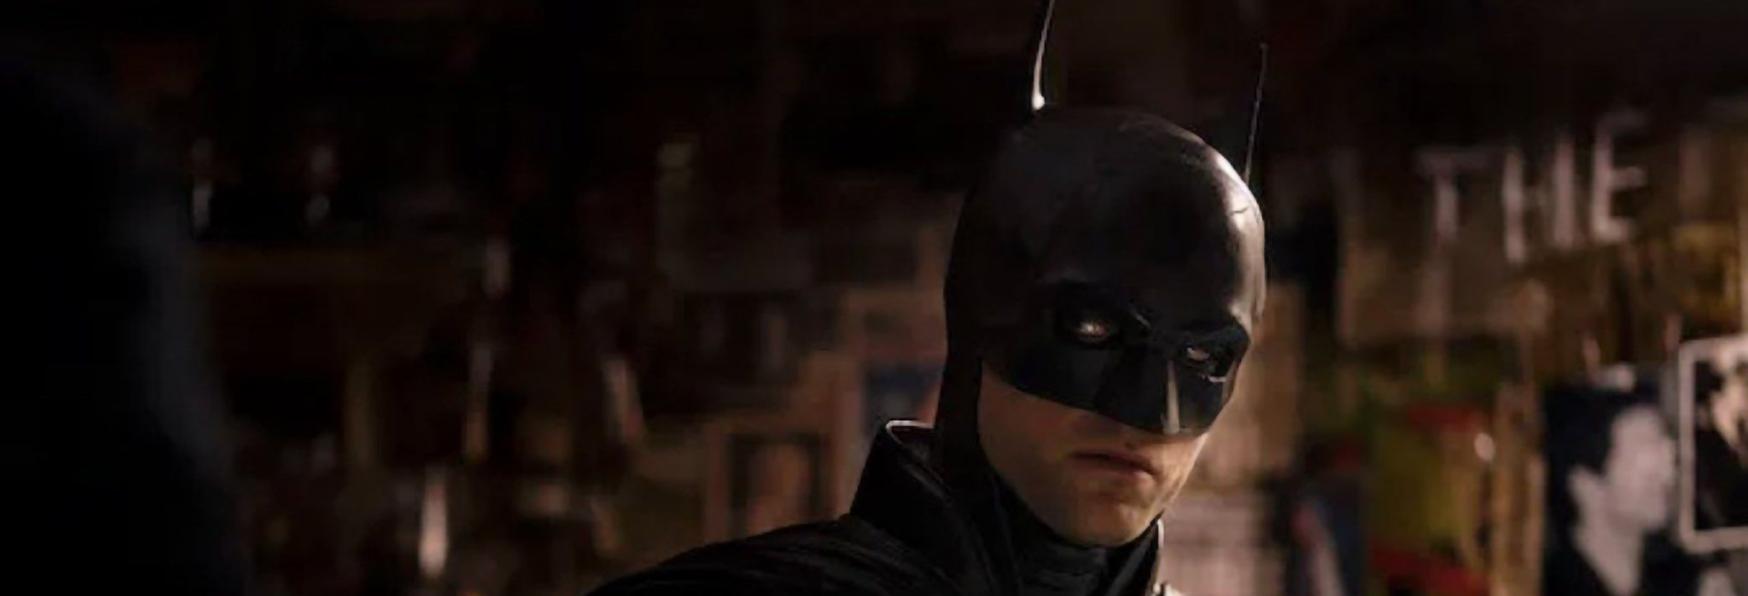 The Penguin: Robert Pattinson tornerà a Interpretare Batman nella Serie Spin-off?